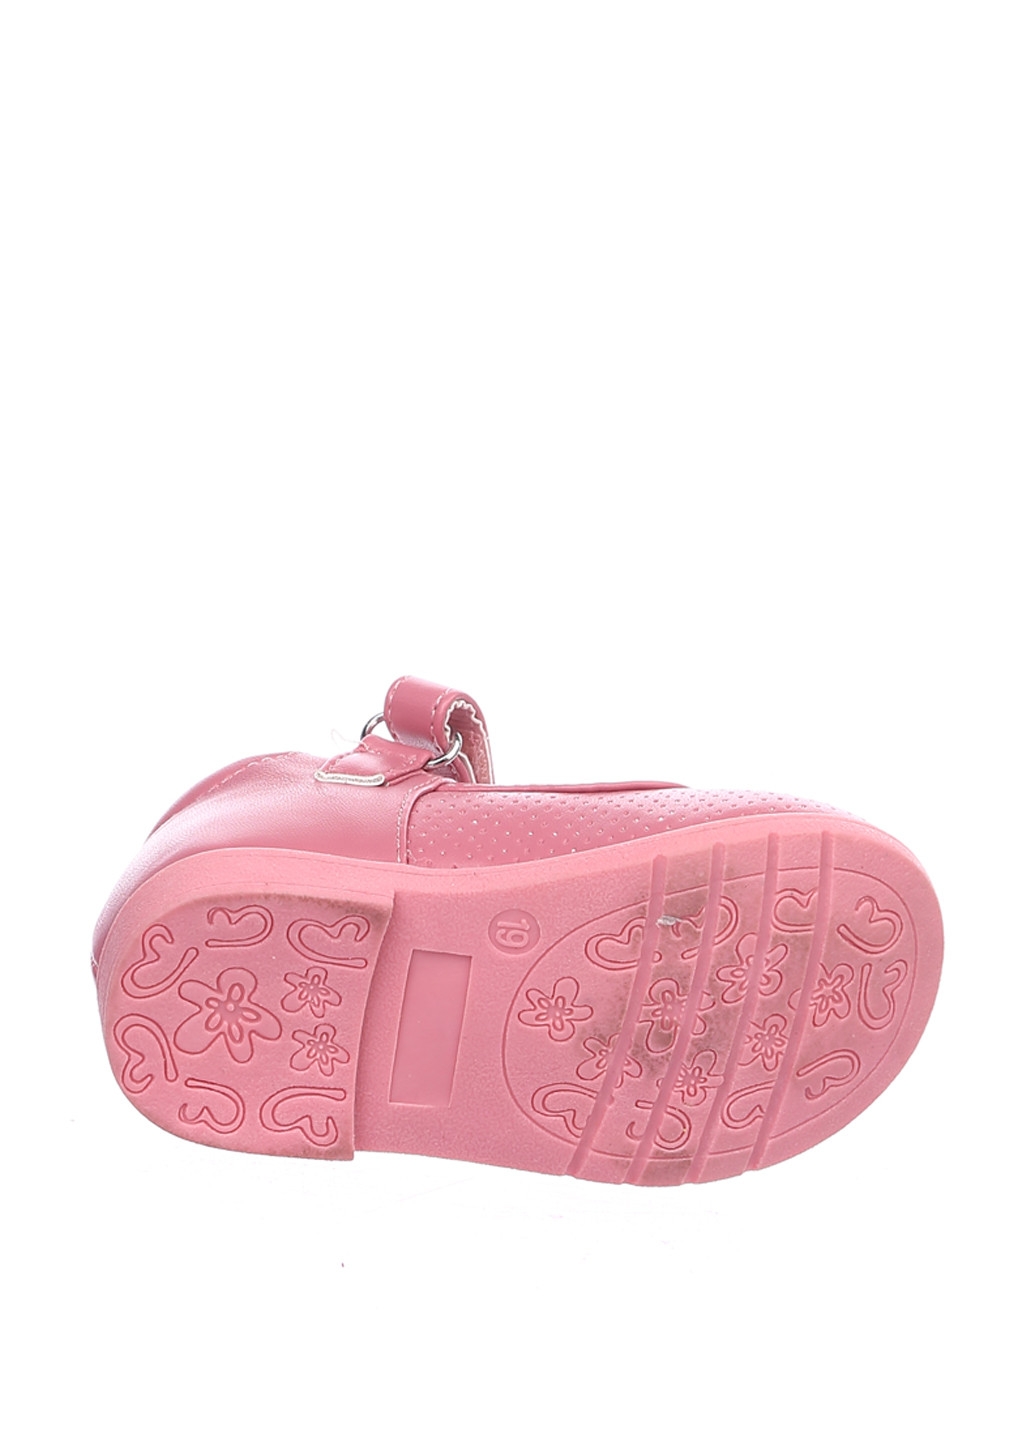 Розовые туфли на низком каблуке Шалунишка